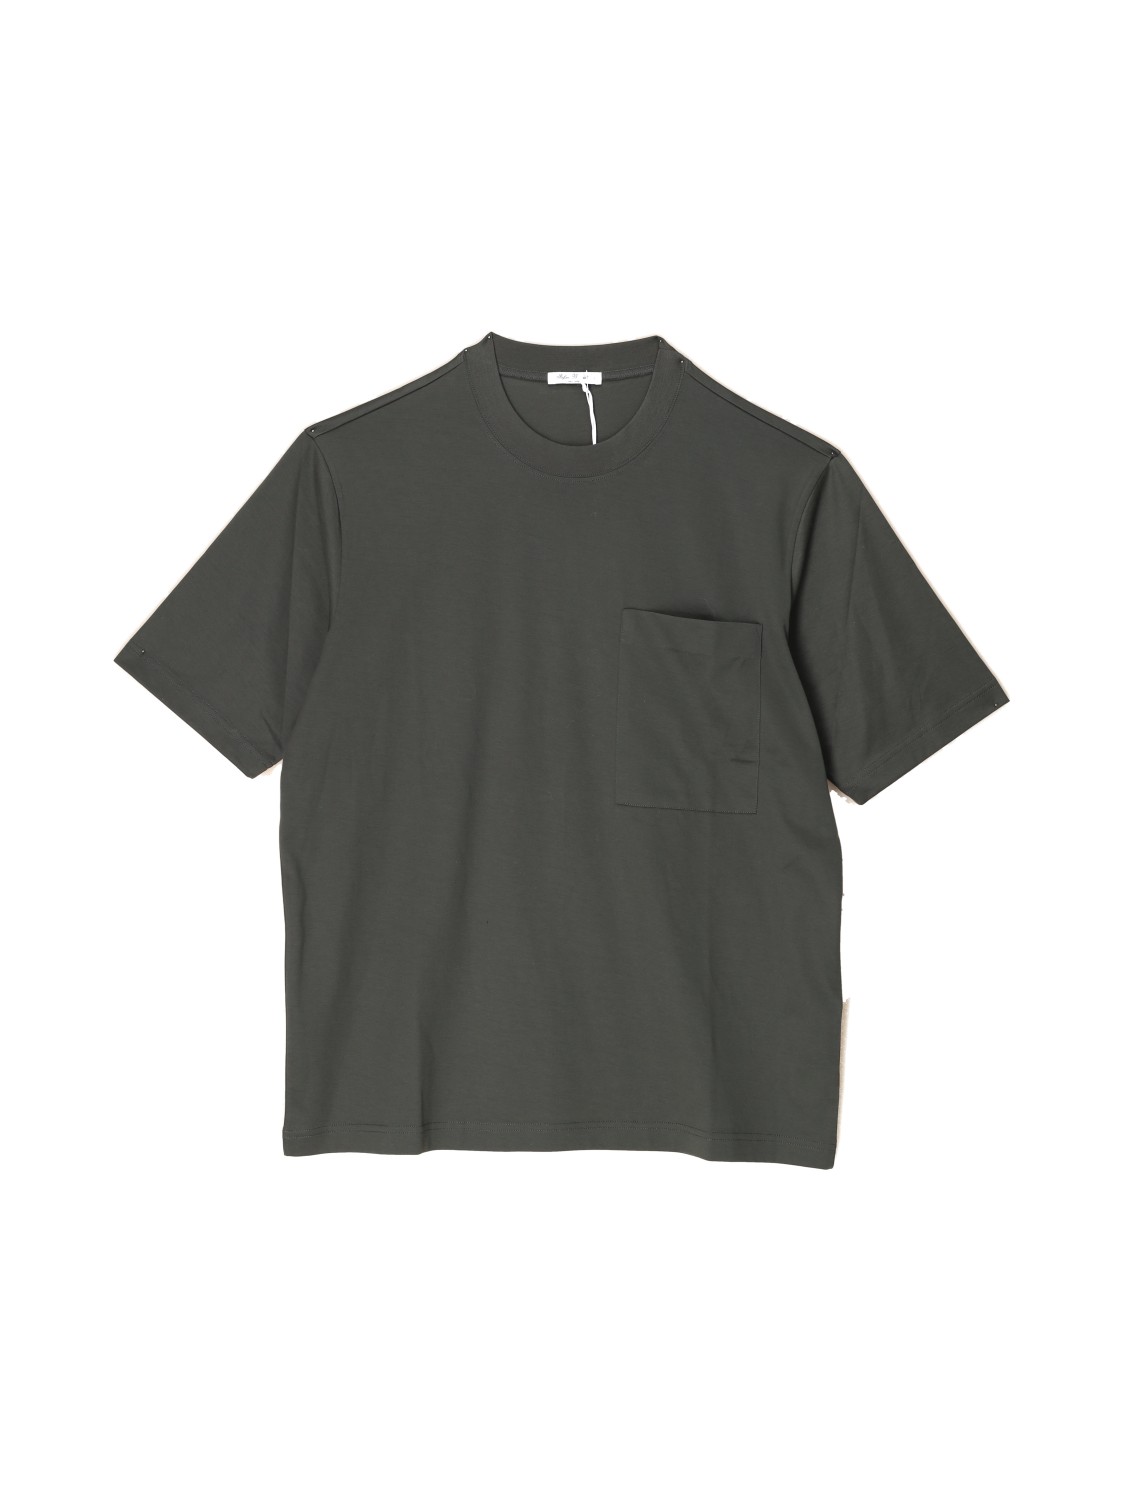 Stefan Brandt Eike – T-Shirt aus Baumwolle khaki M